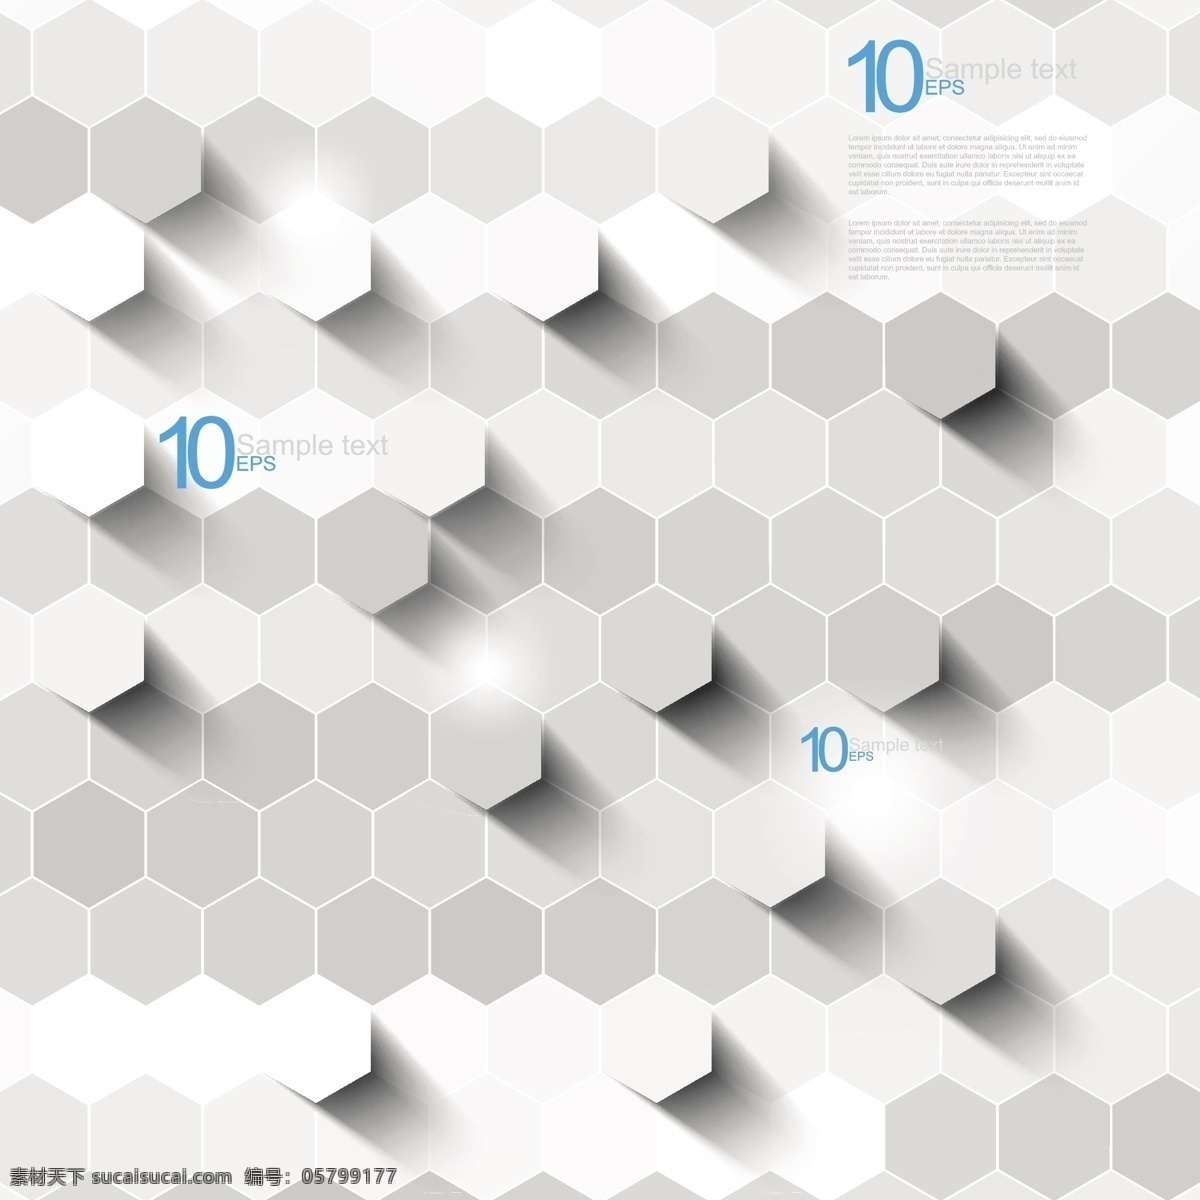 立体 空间感 抽象 背景 白色 蜂窝 灰色 六边形 矢量素材 矢量图 花纹花边